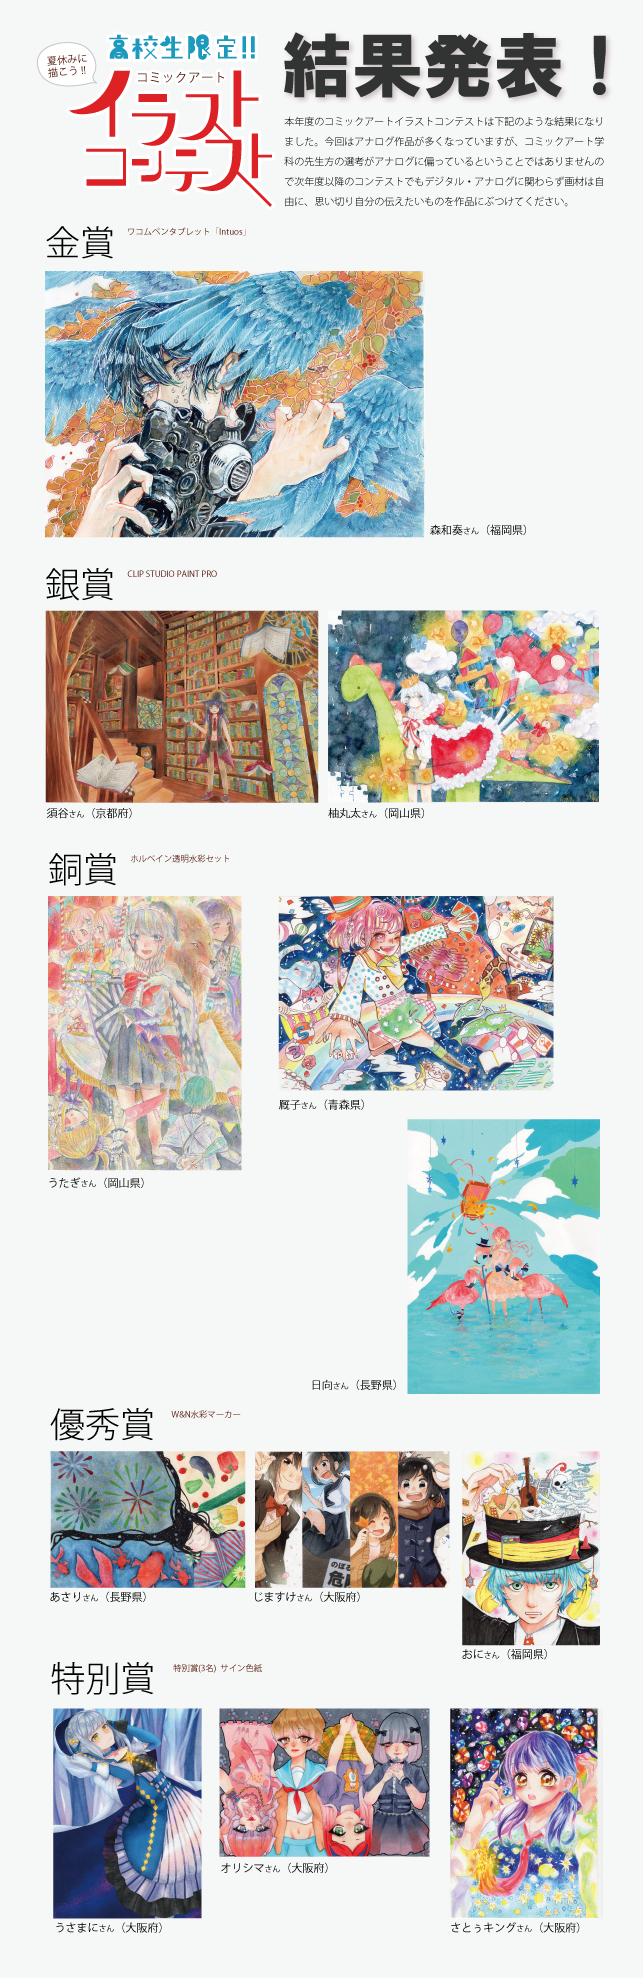 コミックアートイラストコンテスト17 結果発表 大阪総合デザイン専門学校